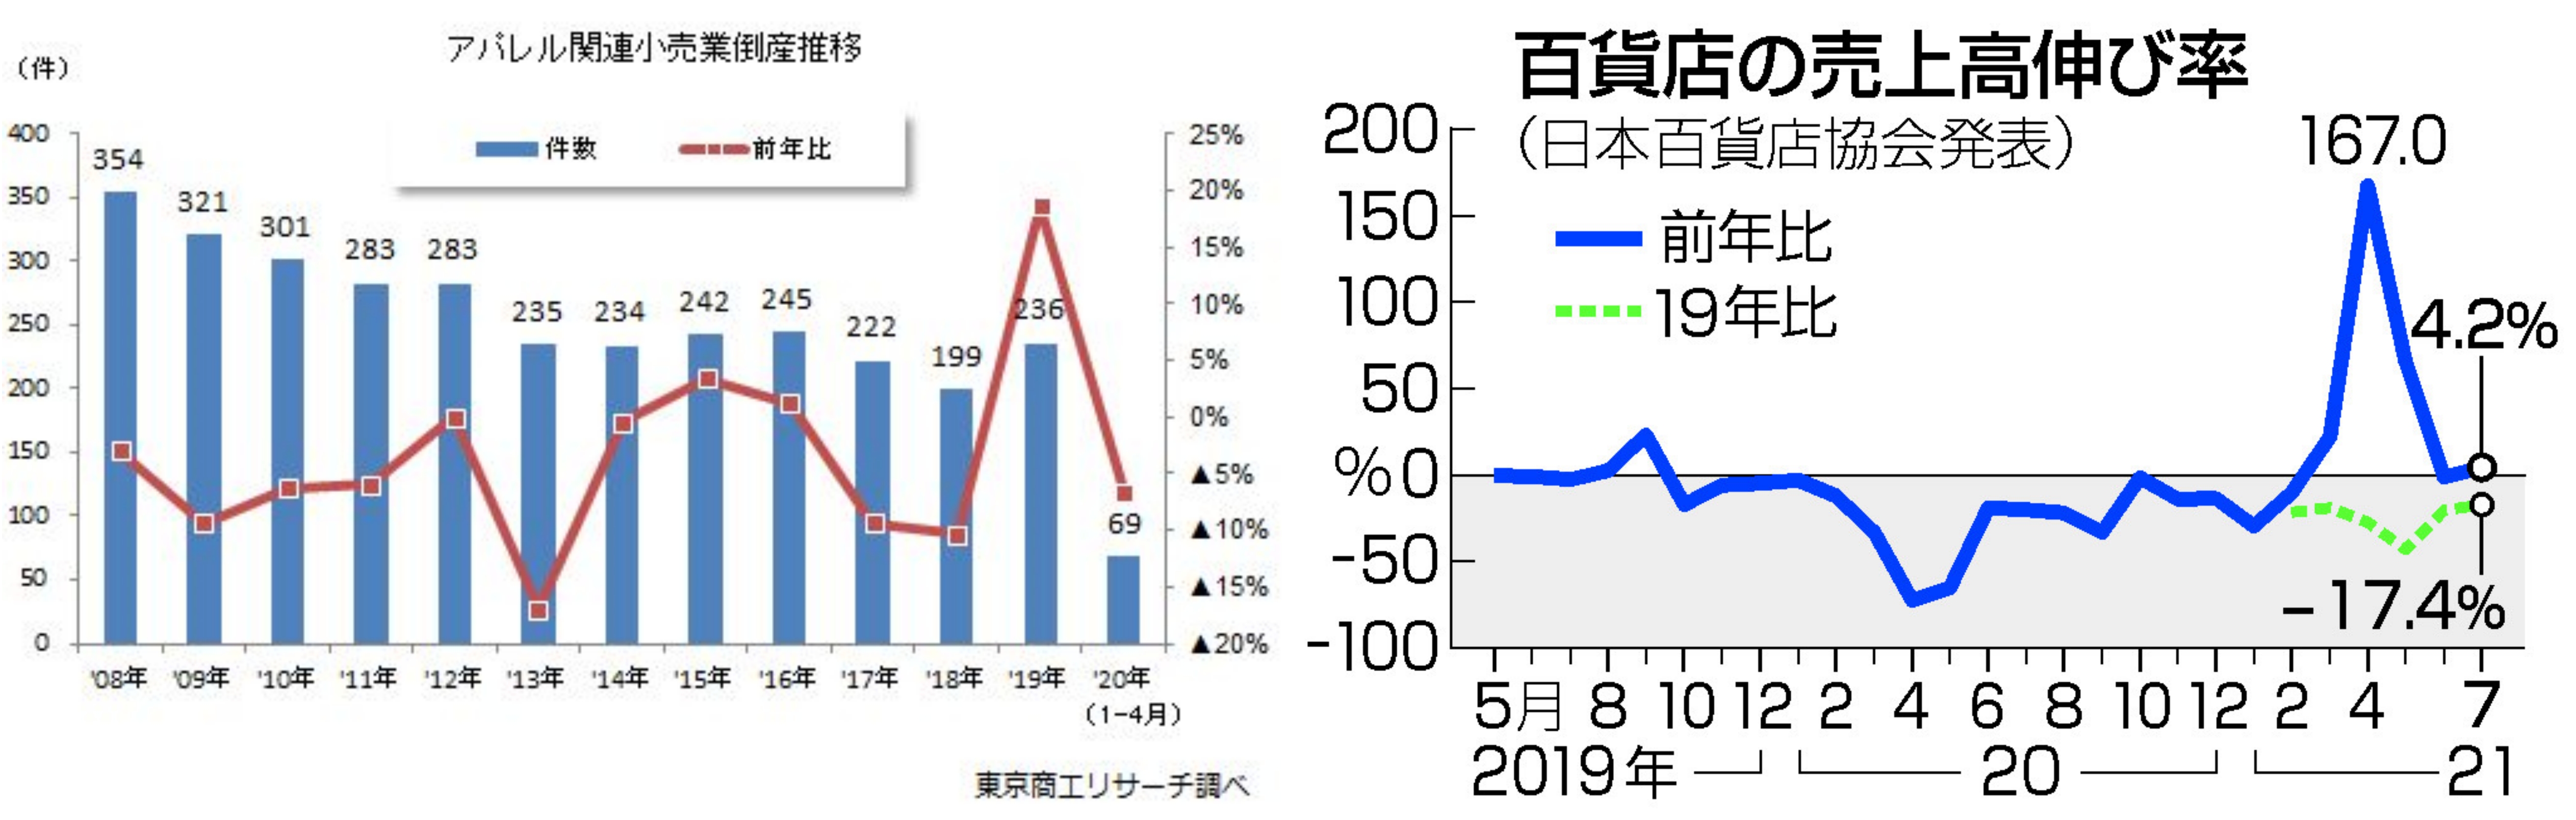 (左)어패럴 관련 소매업체의 도산 건수(파란 막대)를 기록한 그래프(빨간 직선은 전년 대비). 2019년에 급증했음을 한 눈에 확인할 수 있어요. 백화점 매출의 증감을 표기하고 있어요. (右)연두색 점선이 19년 대비 수치에요.